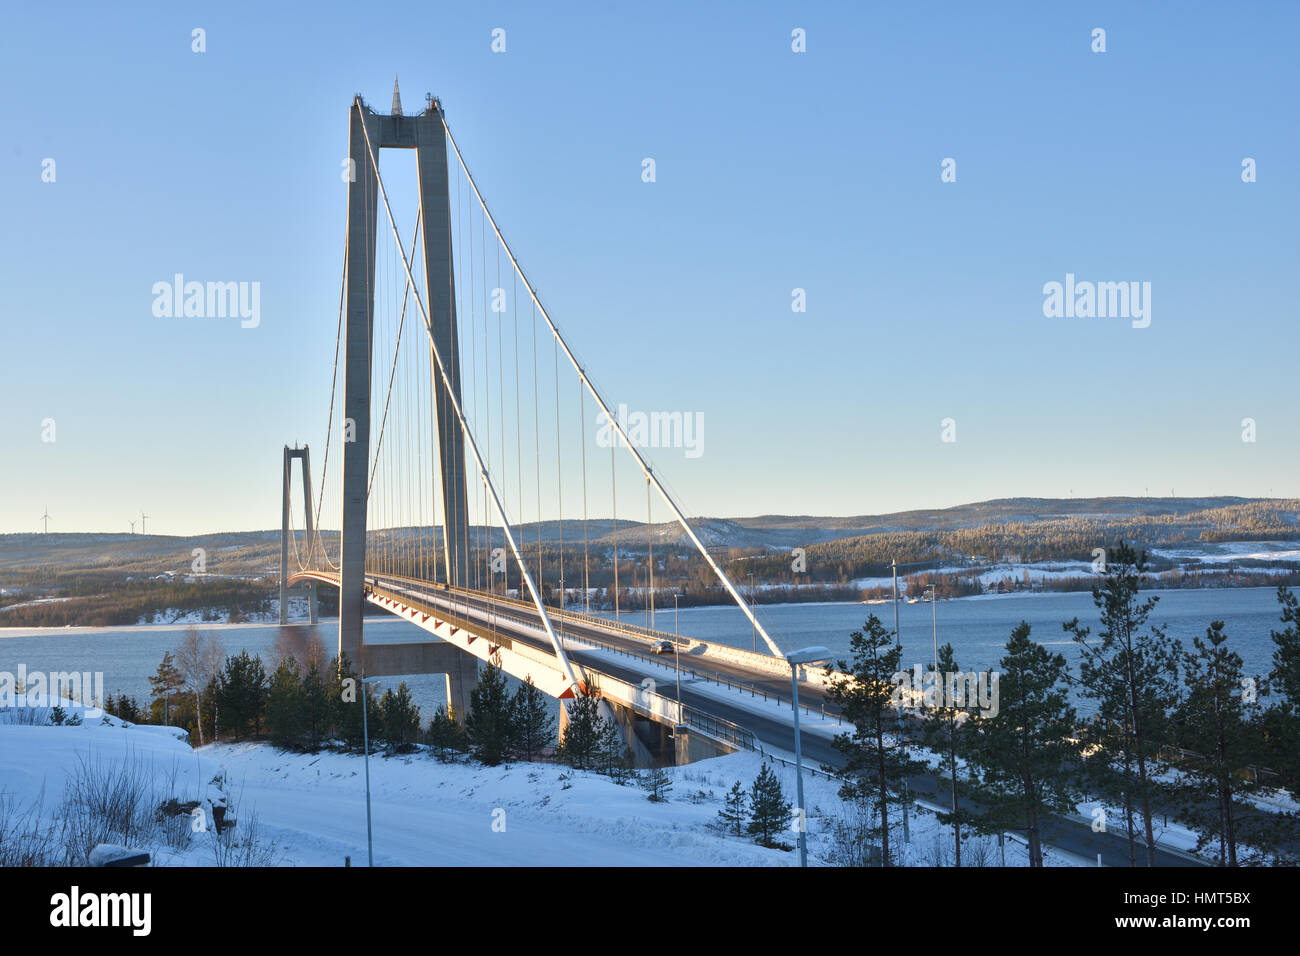 Steilküste-Brücke im Winter Sonne, Bild aus Nordschweden. Stockfoto